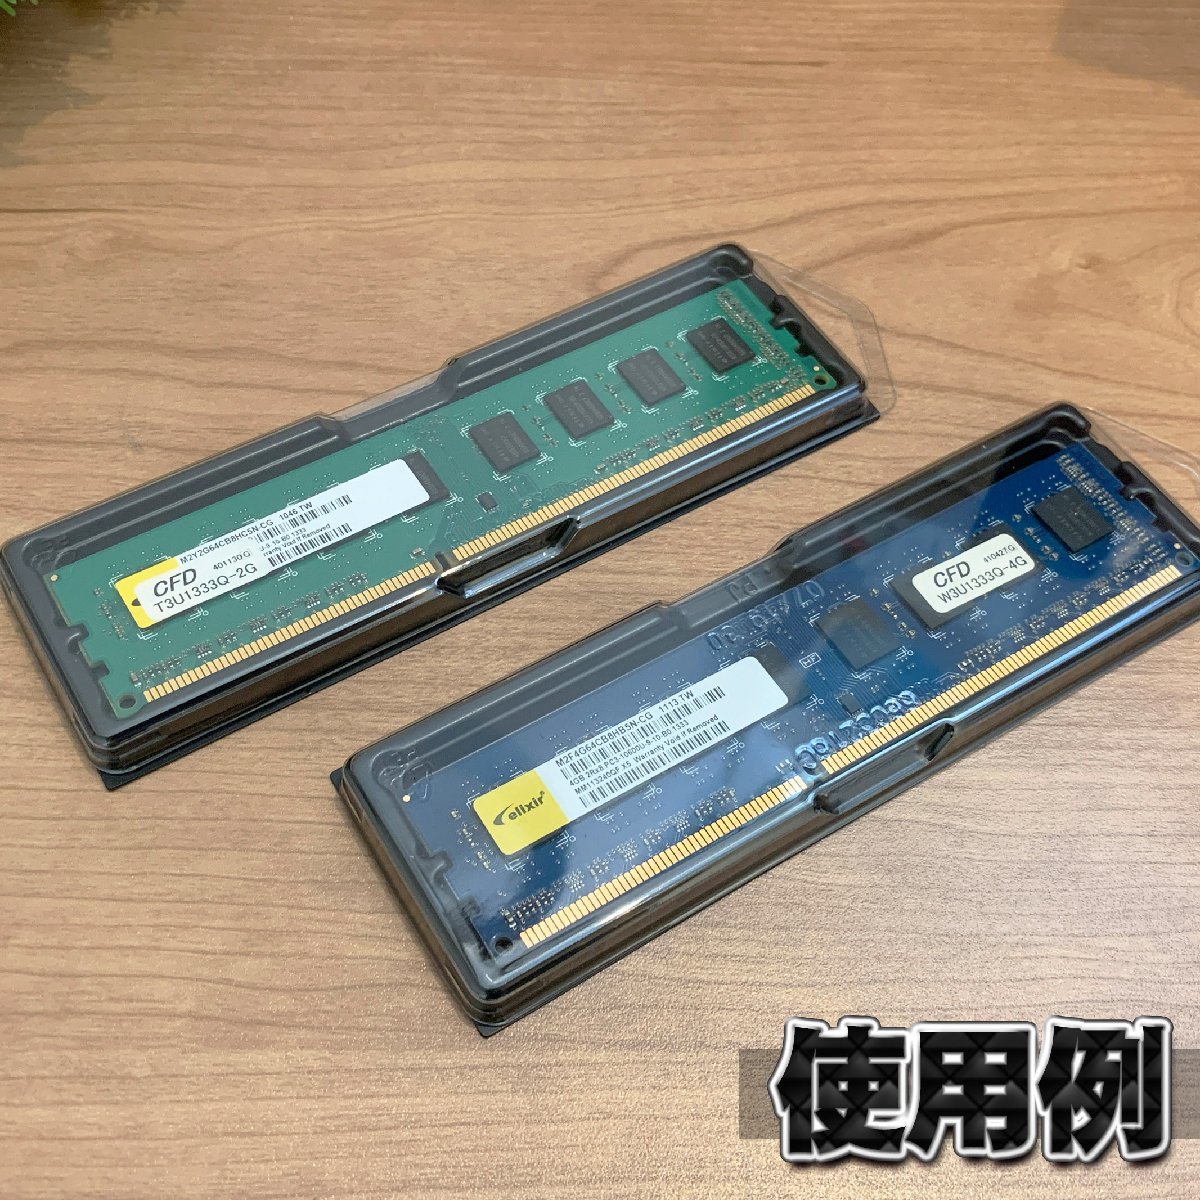 【 DDR2 対応 】蓋付き PC メモリー シェルケース DIMM 用 プラスチック 保管 収納ケース 20枚セットの画像6